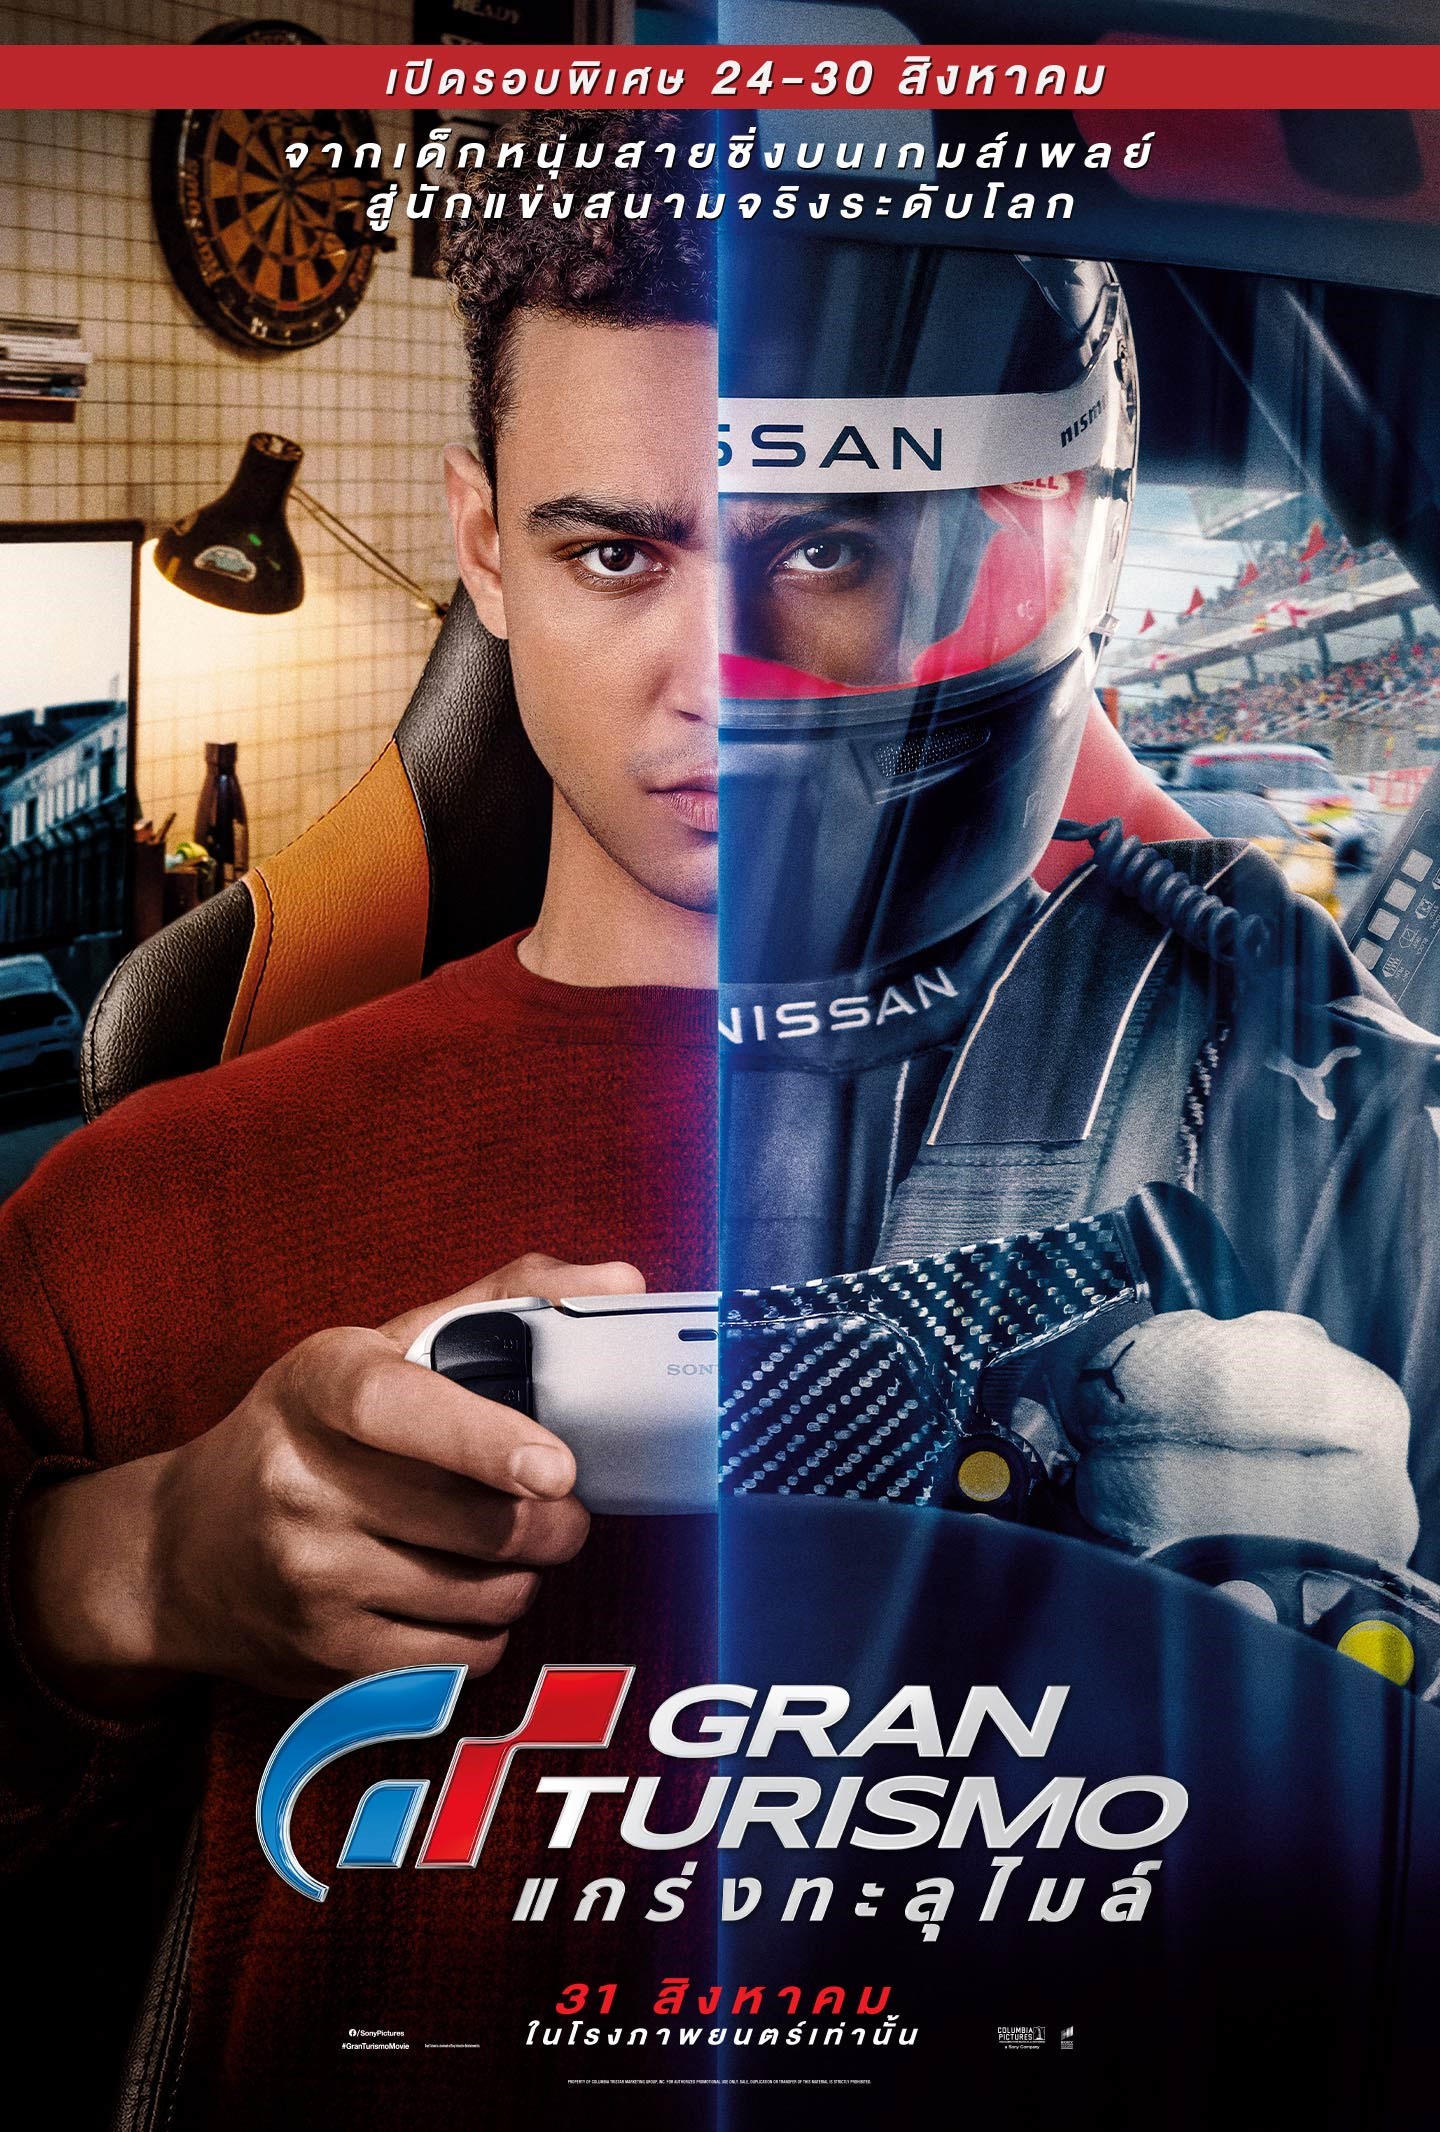 ดูหนังออนไลน์ Gran Turismo GT แกร่งทะลุไมล์ เต็มเรื่อง พากย์ไทย